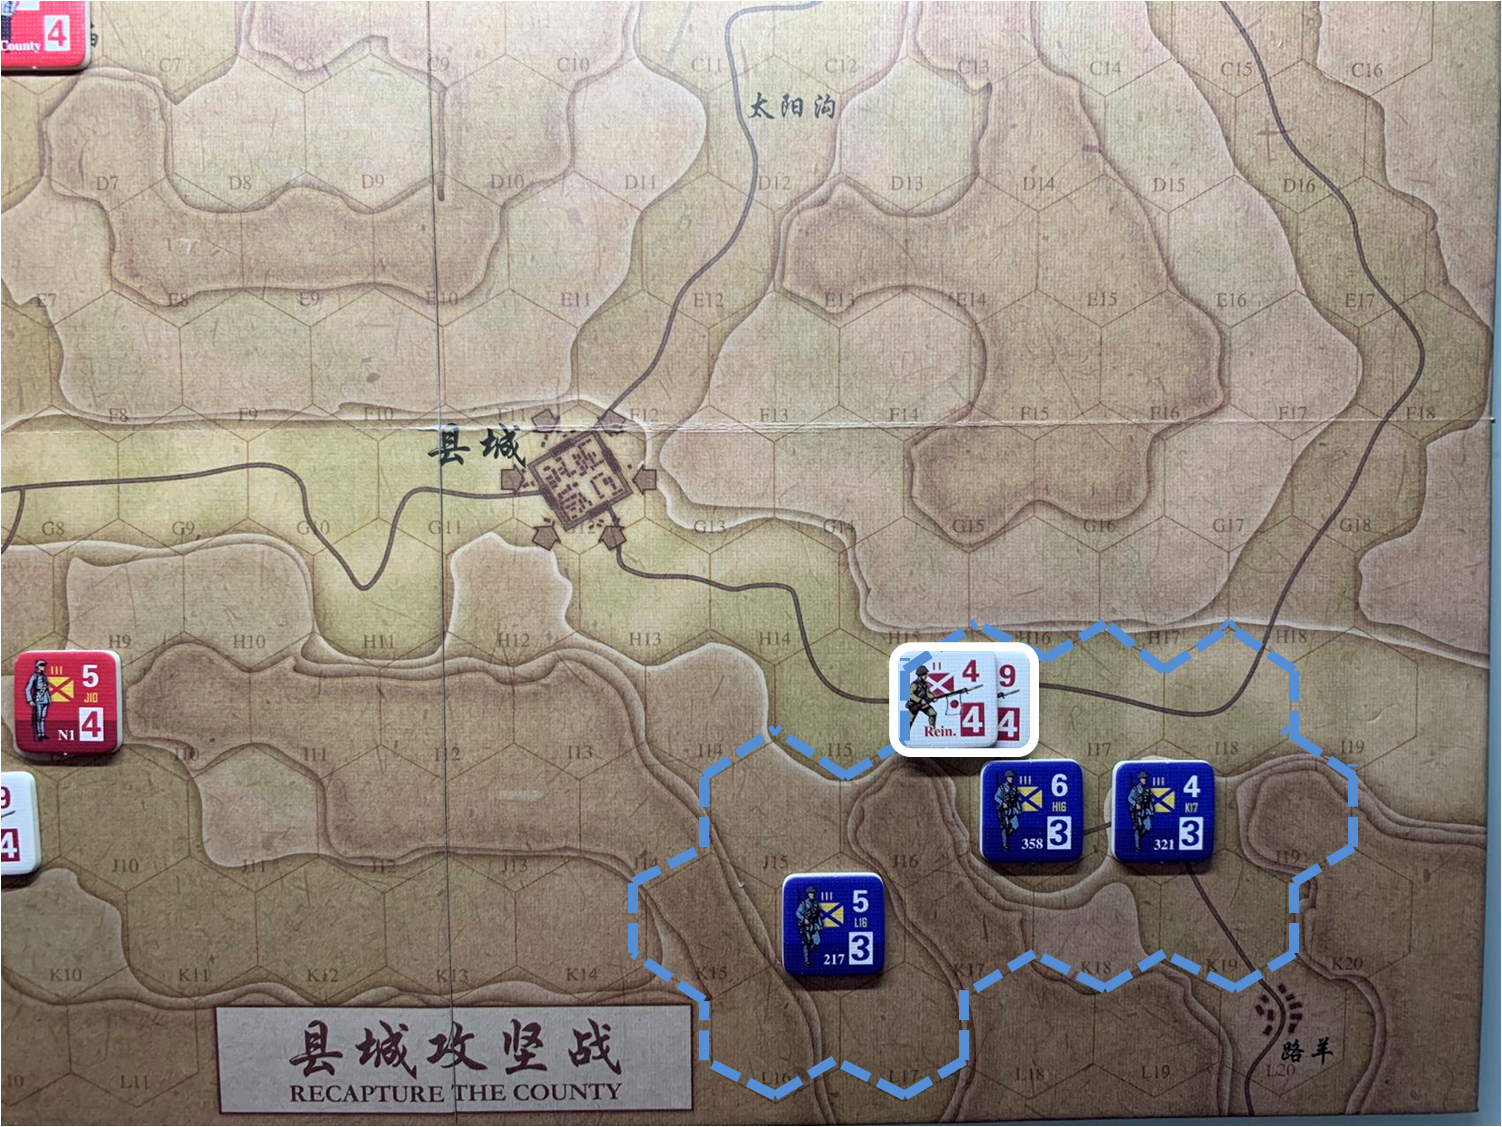 第三回合路羊方向日军正规军部队（I16）对于移动命令2的执行结果，及附近国军正规军控制区覆盖范围